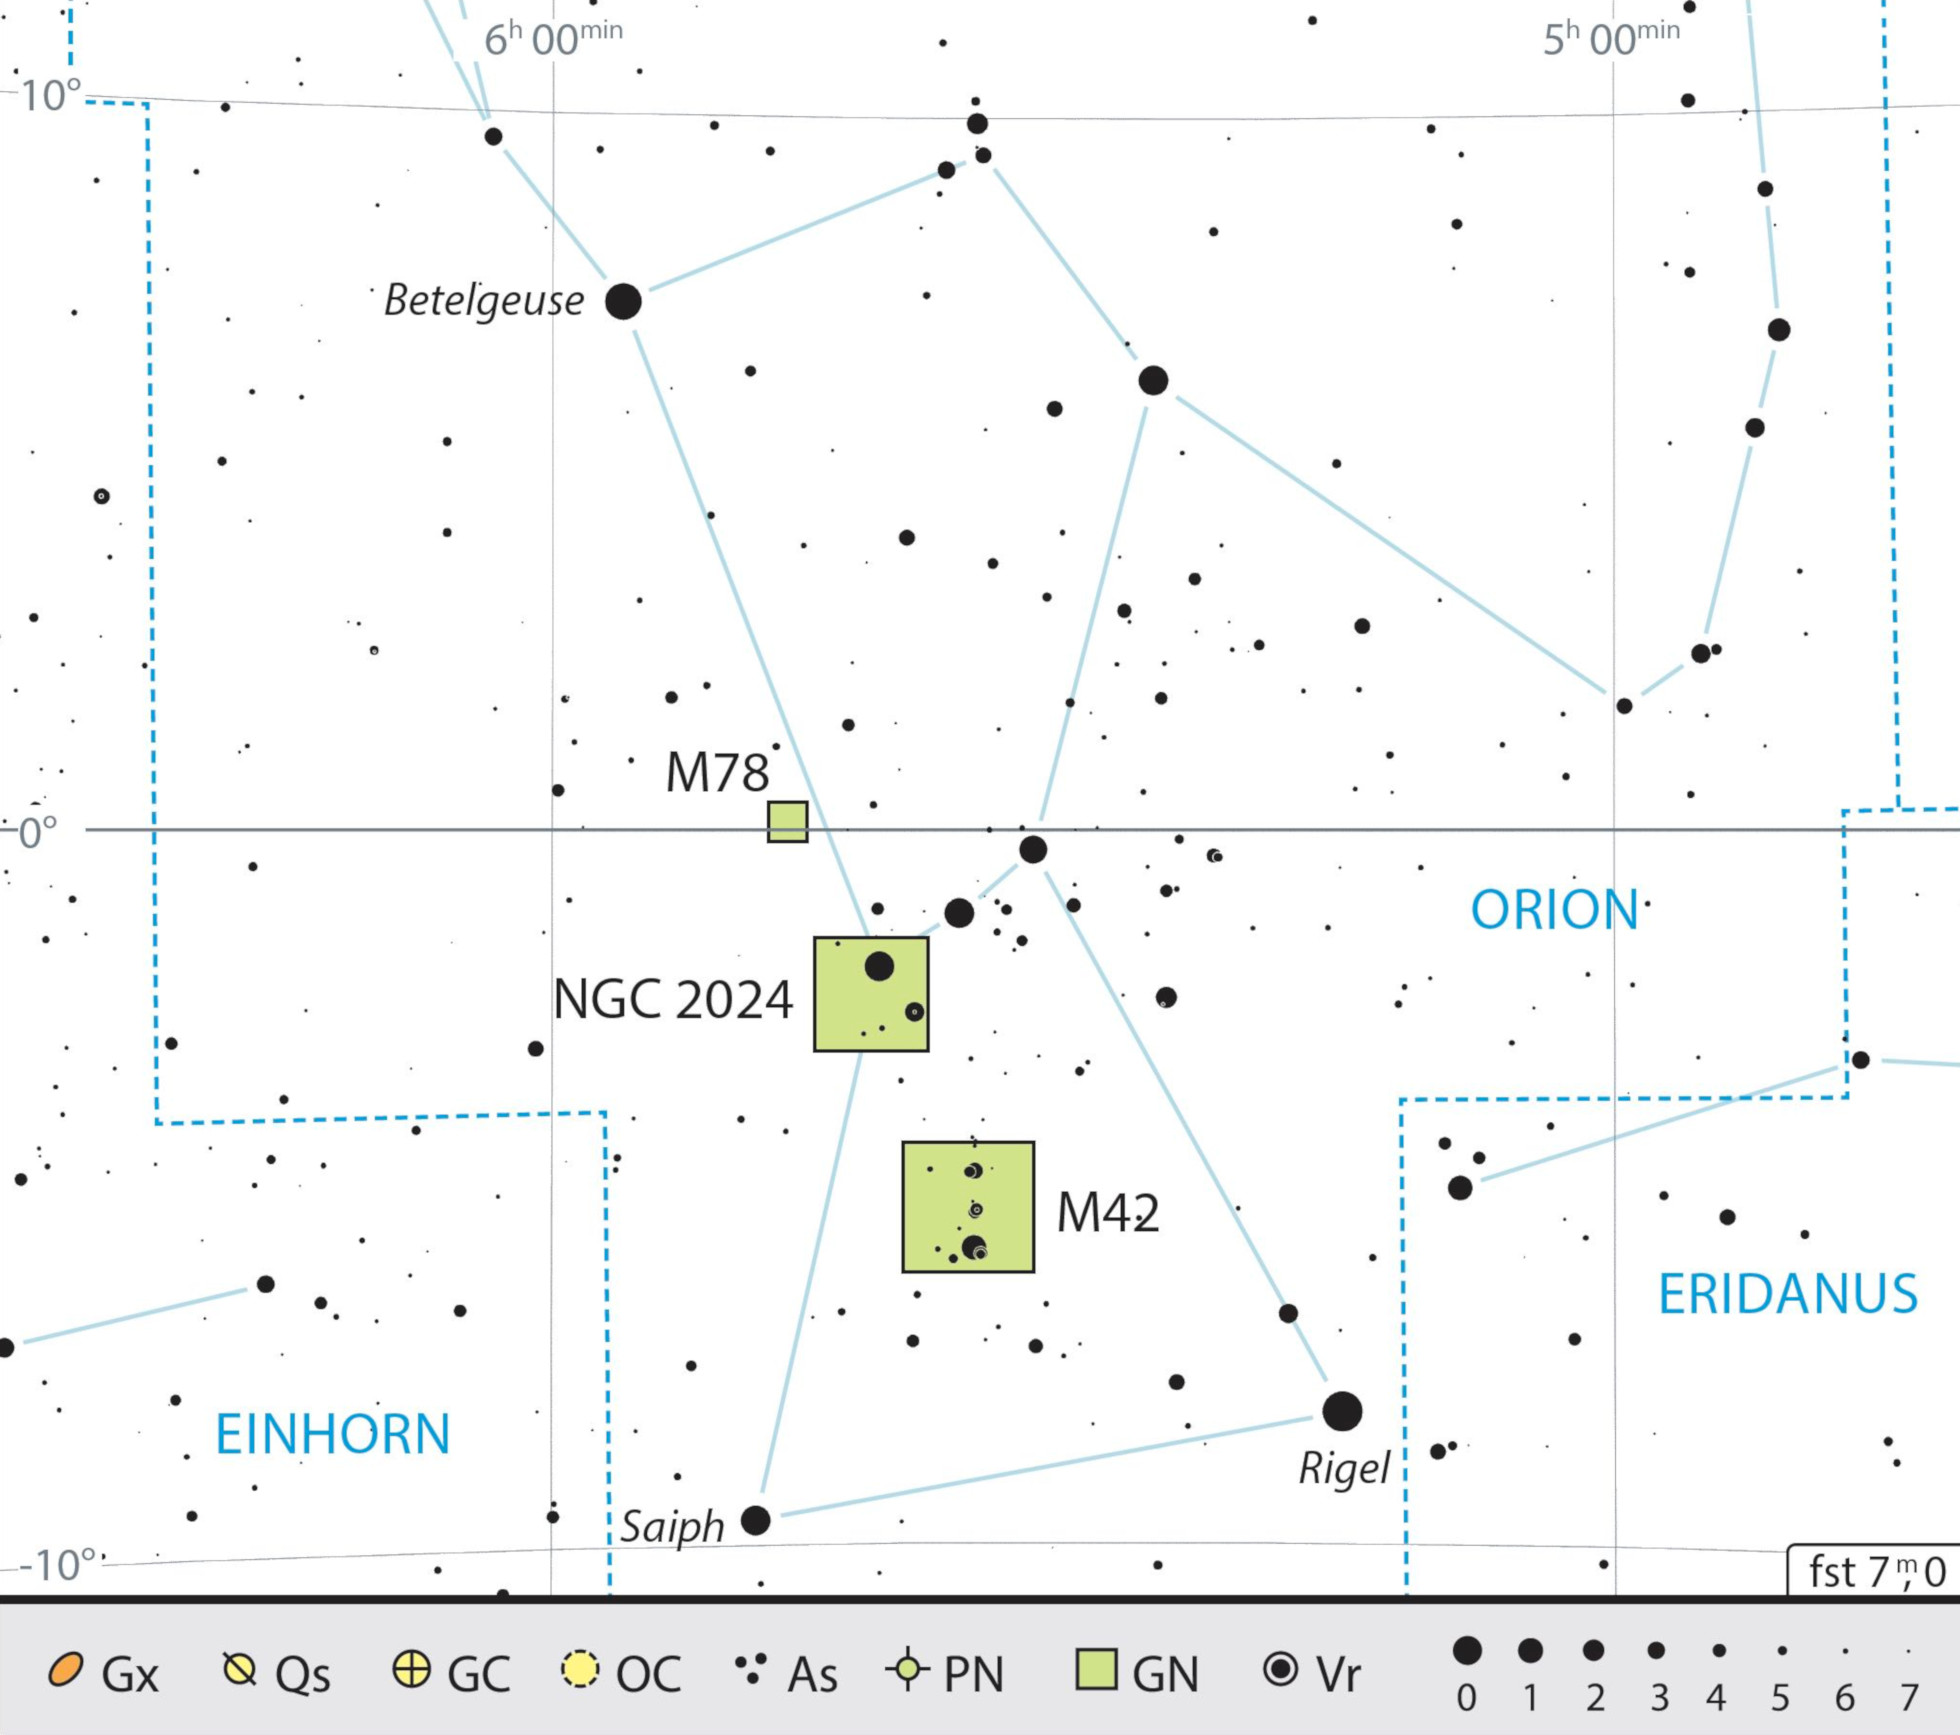 Harta constelației Orion cu recomandările pentru observare. J. Scholten 